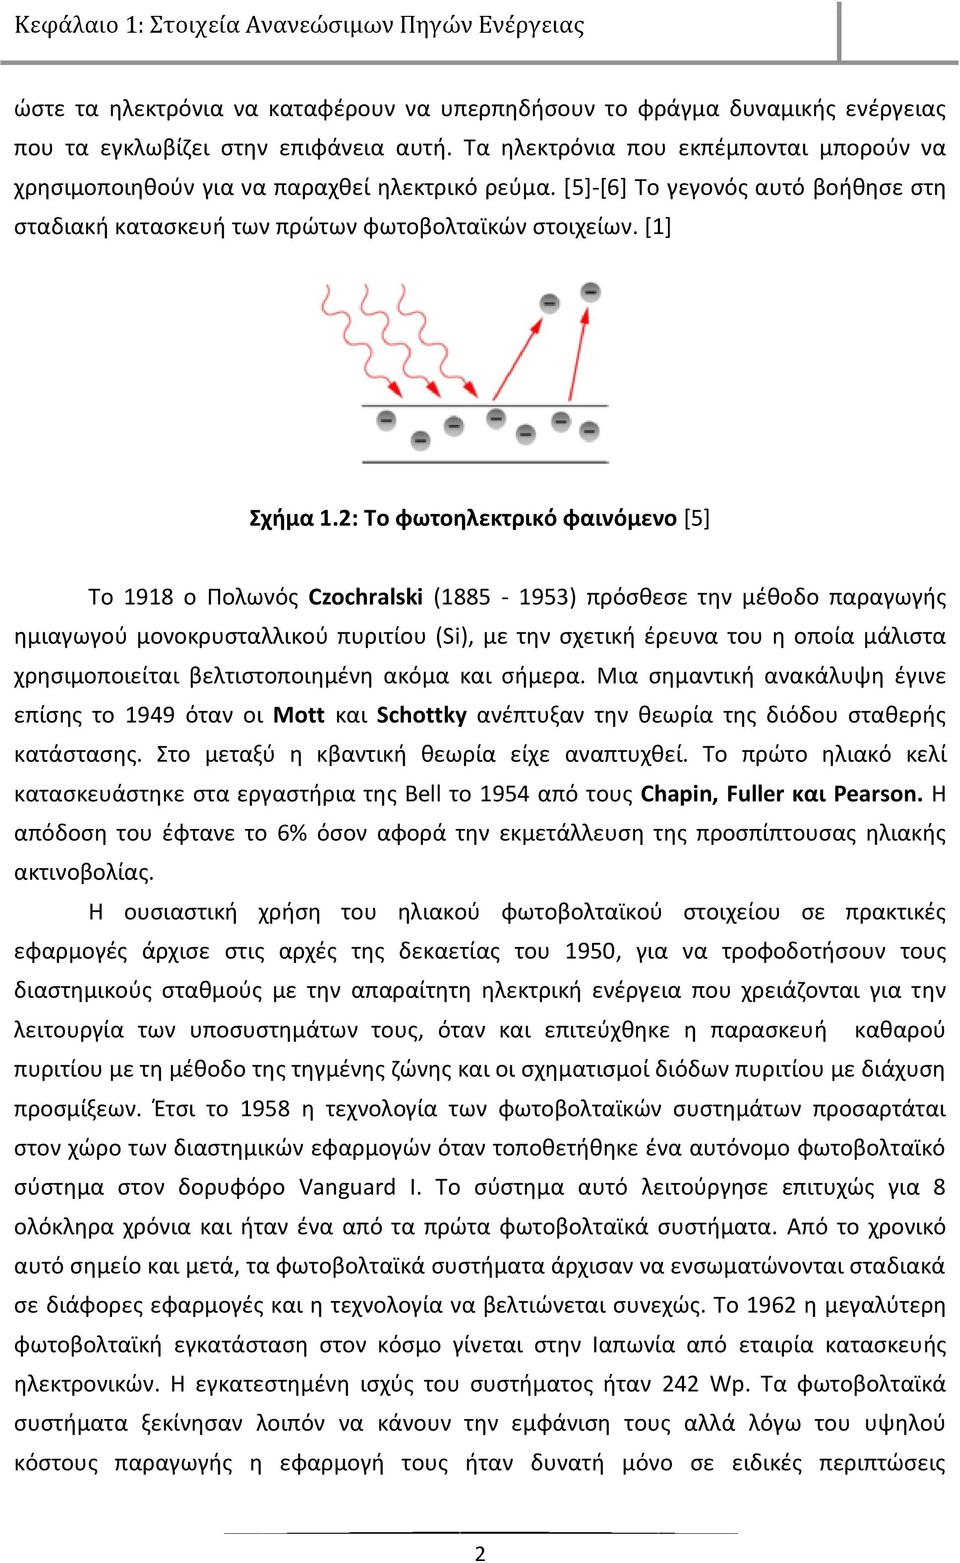 2: Σο φωτοθλεκτρικό φαινόμενο [5] Σο 1918 ο Πολωνόσ Czochralski (1885-1953) πρόςκεςε τθν μζκοδο παραγωγισ θμιαγωγοφ μονοκρυςταλλικοφ πυριτίου (Si), με τθν ςχετικι ζρευνα του θ οποία μάλιςτα